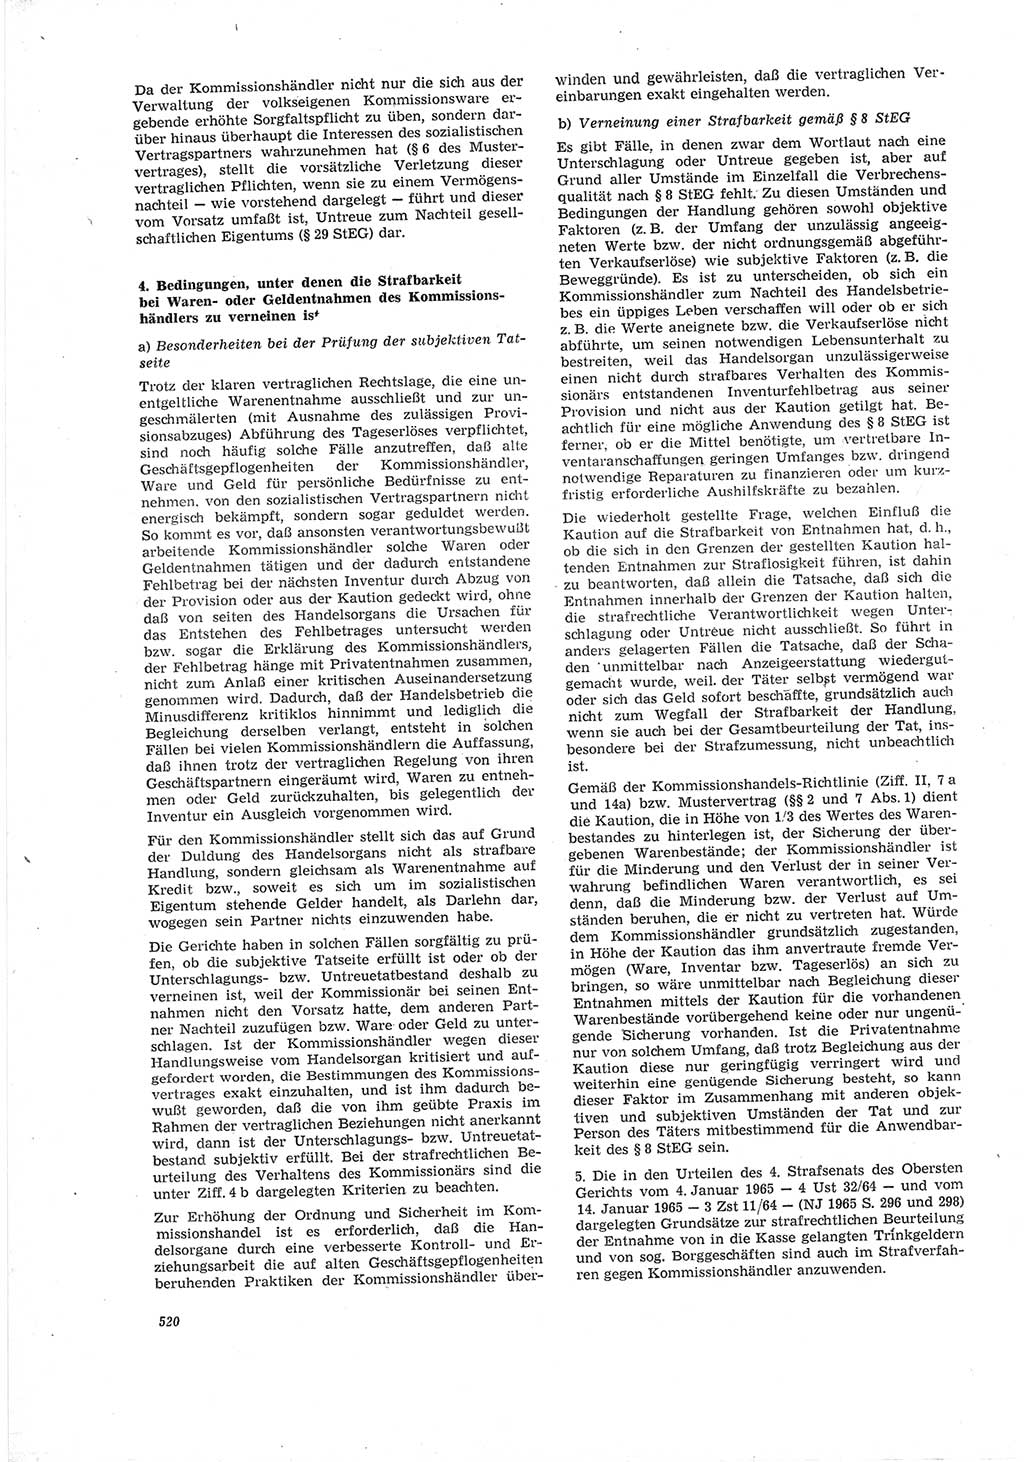 Neue Justiz (NJ), Zeitschrift für Recht und Rechtswissenschaft [Deutsche Demokratische Republik (DDR)], 19. Jahrgang 1965, Seite 520 (NJ DDR 1965, S. 520)